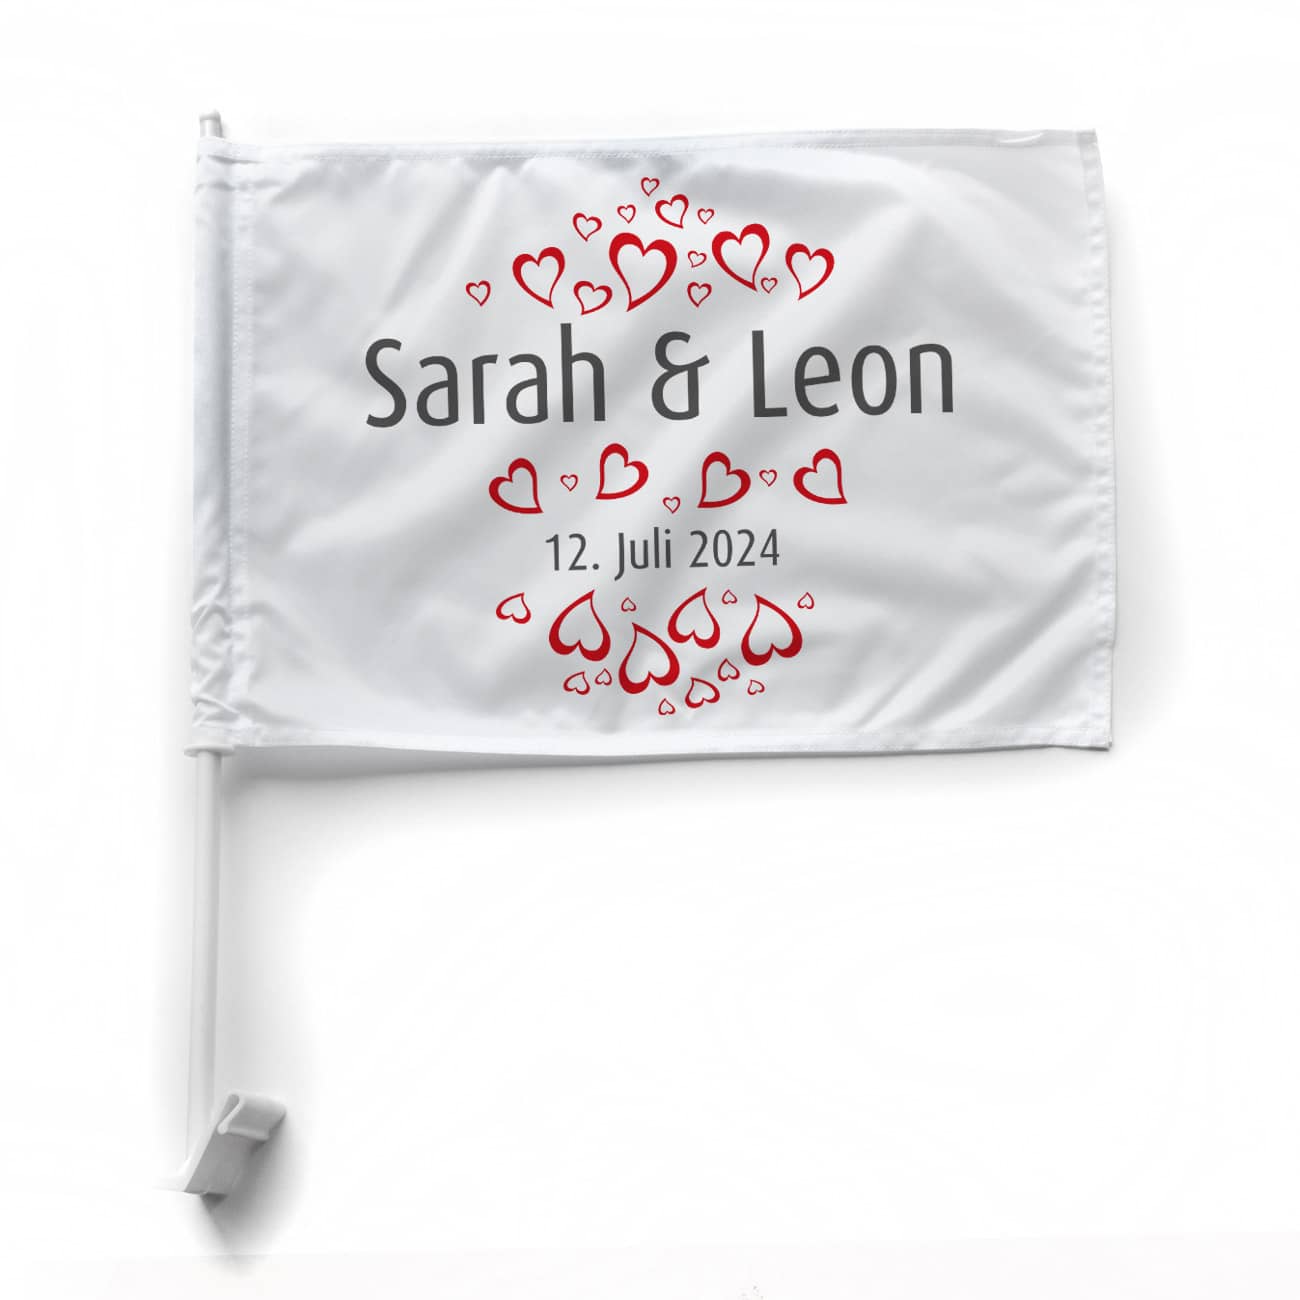 Flagge, Autofahne zur Hochzeit mit persönlichem Aufdruck von Namen und Datum